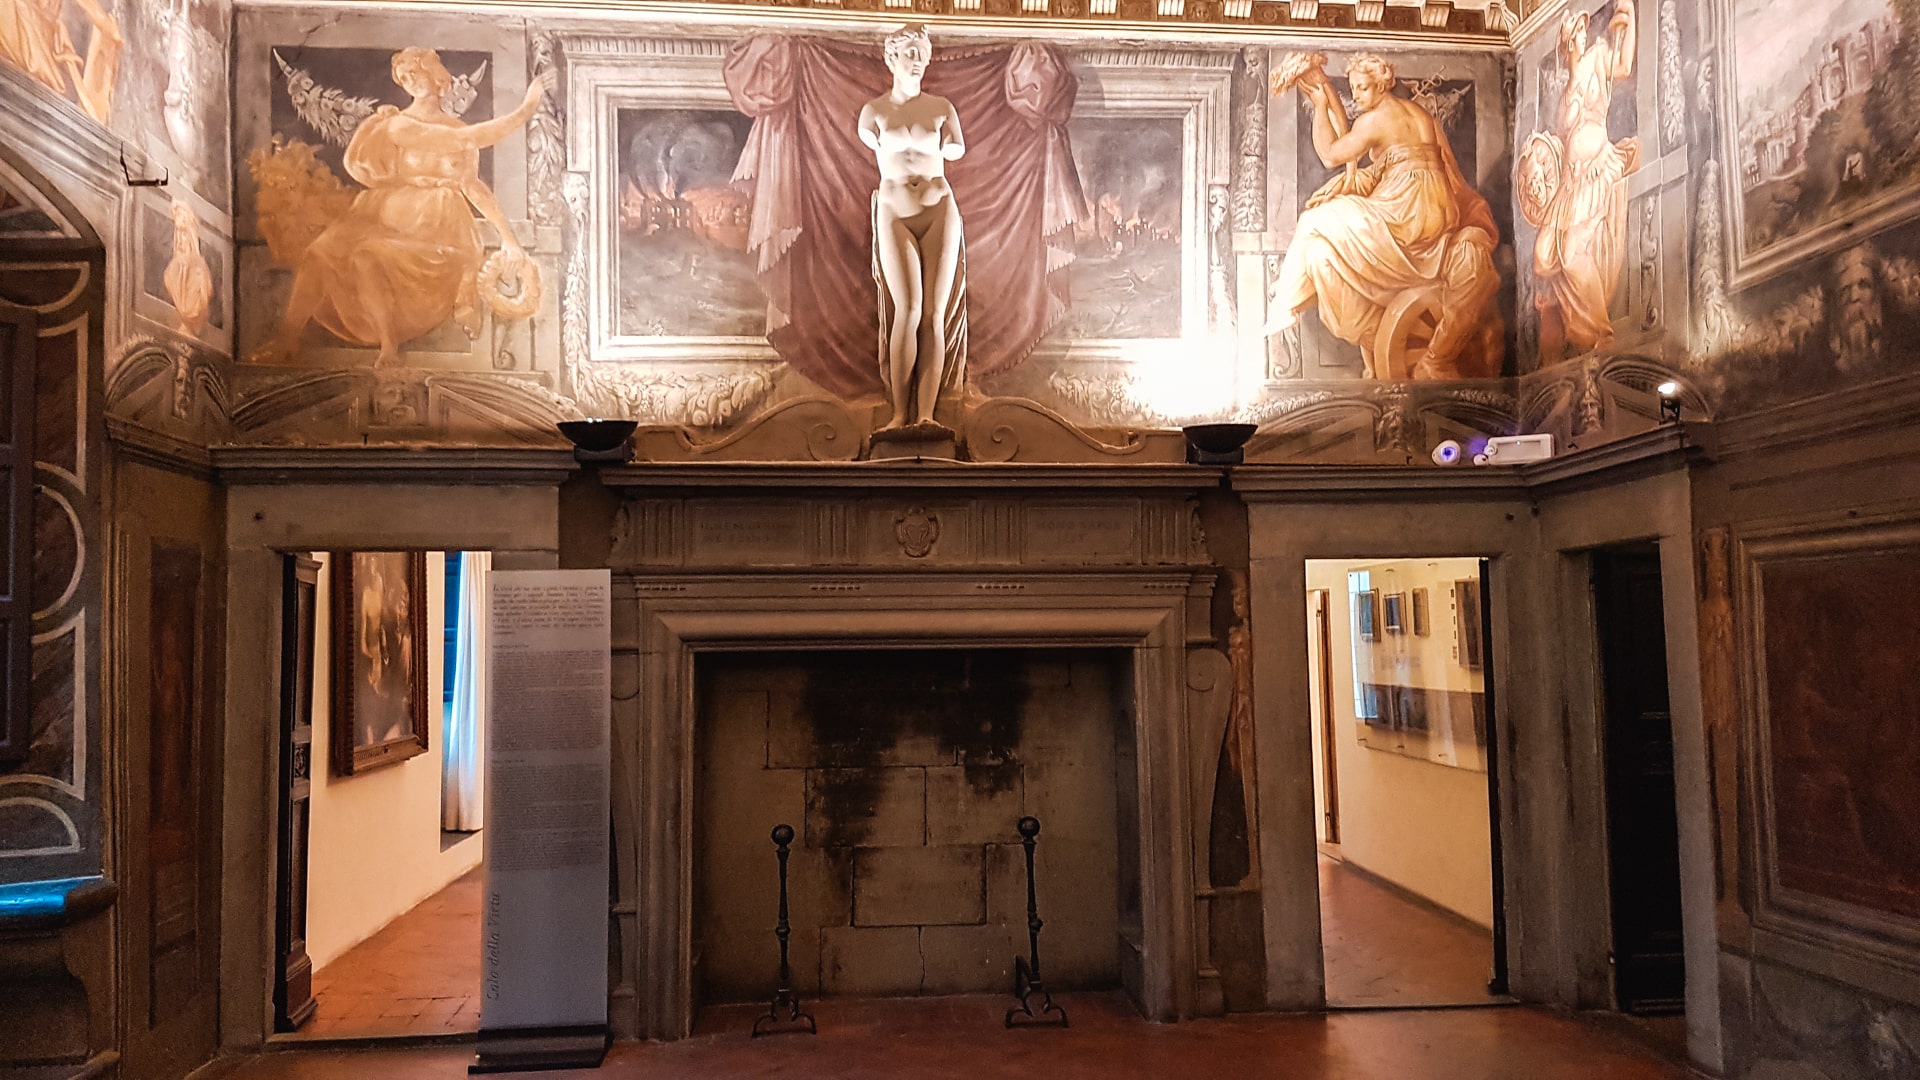 Una bellissima sala della casa vasari di arezzo. In primo piano un camino incorniciato e sopra affreschi decorativi e una statua in marmo.